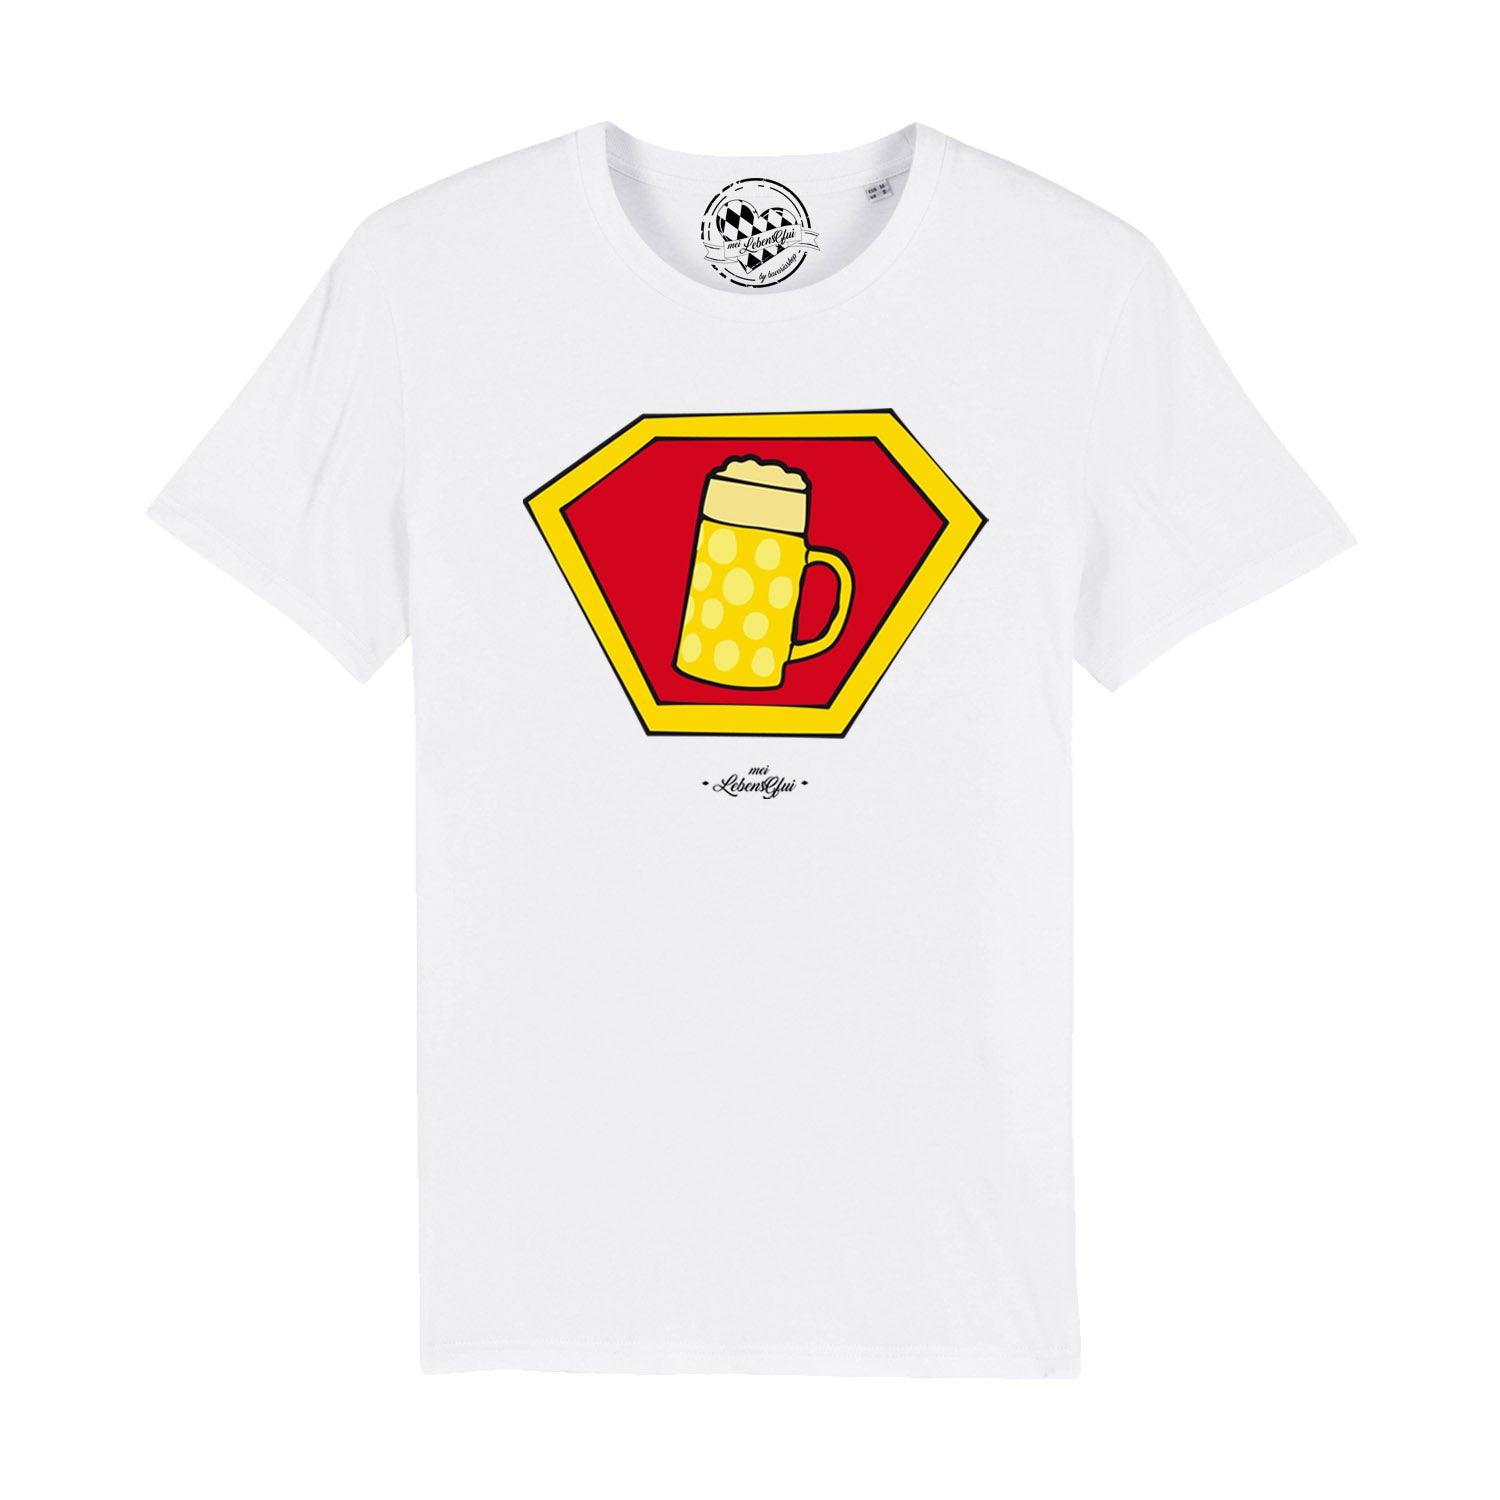 Herren T-Shirt "Super-Bierkrug" - bavariashop - mei LebensGfui